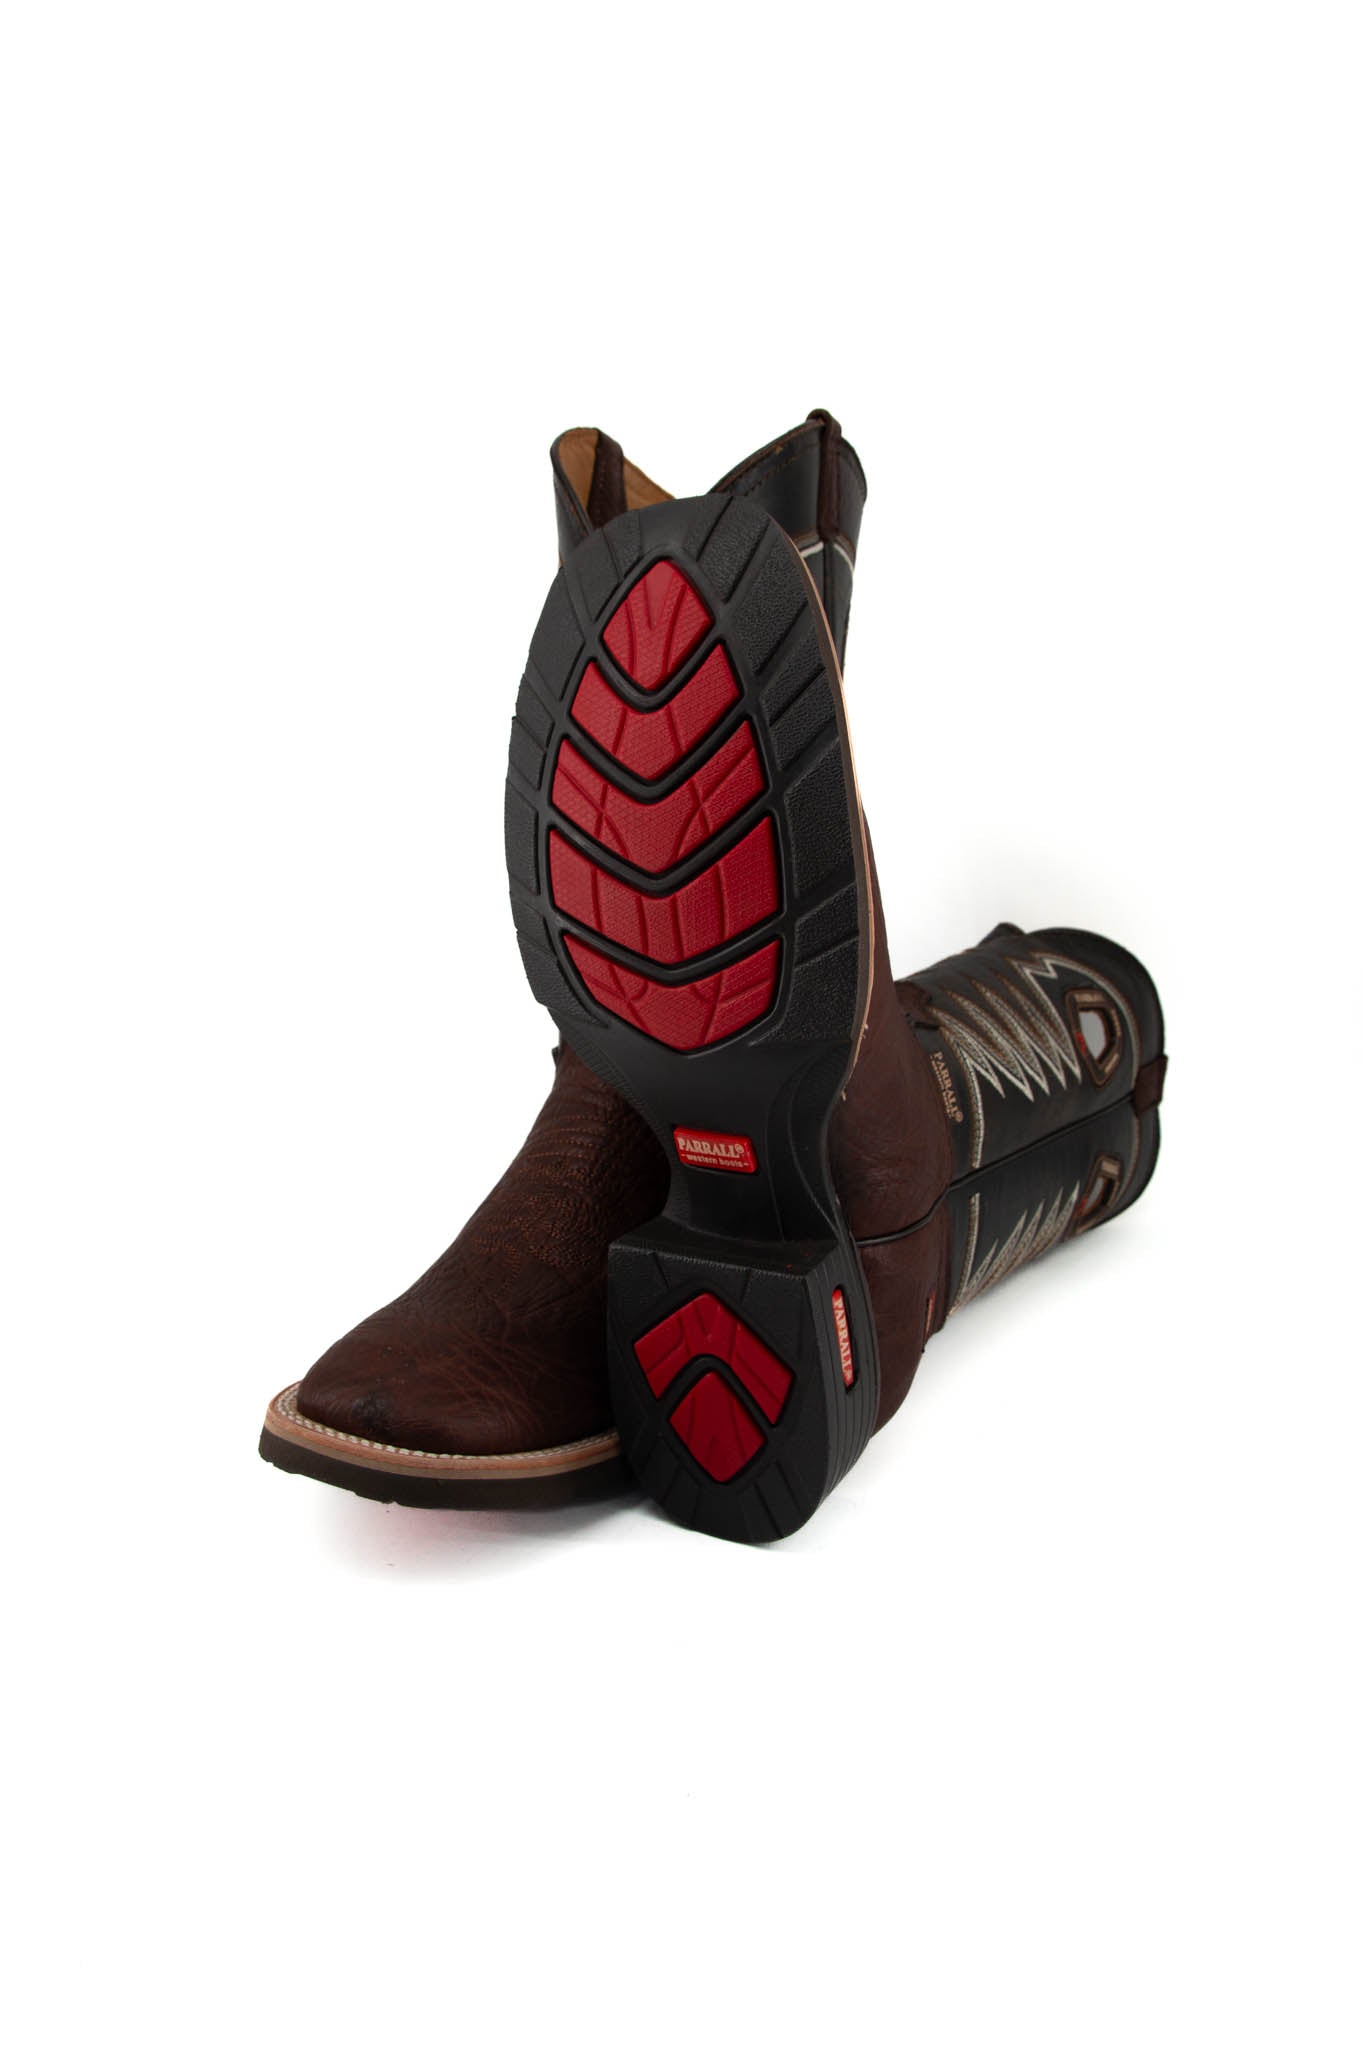 Parrall 630 Shoulder Original Miel Square Toe Cowboy Boot